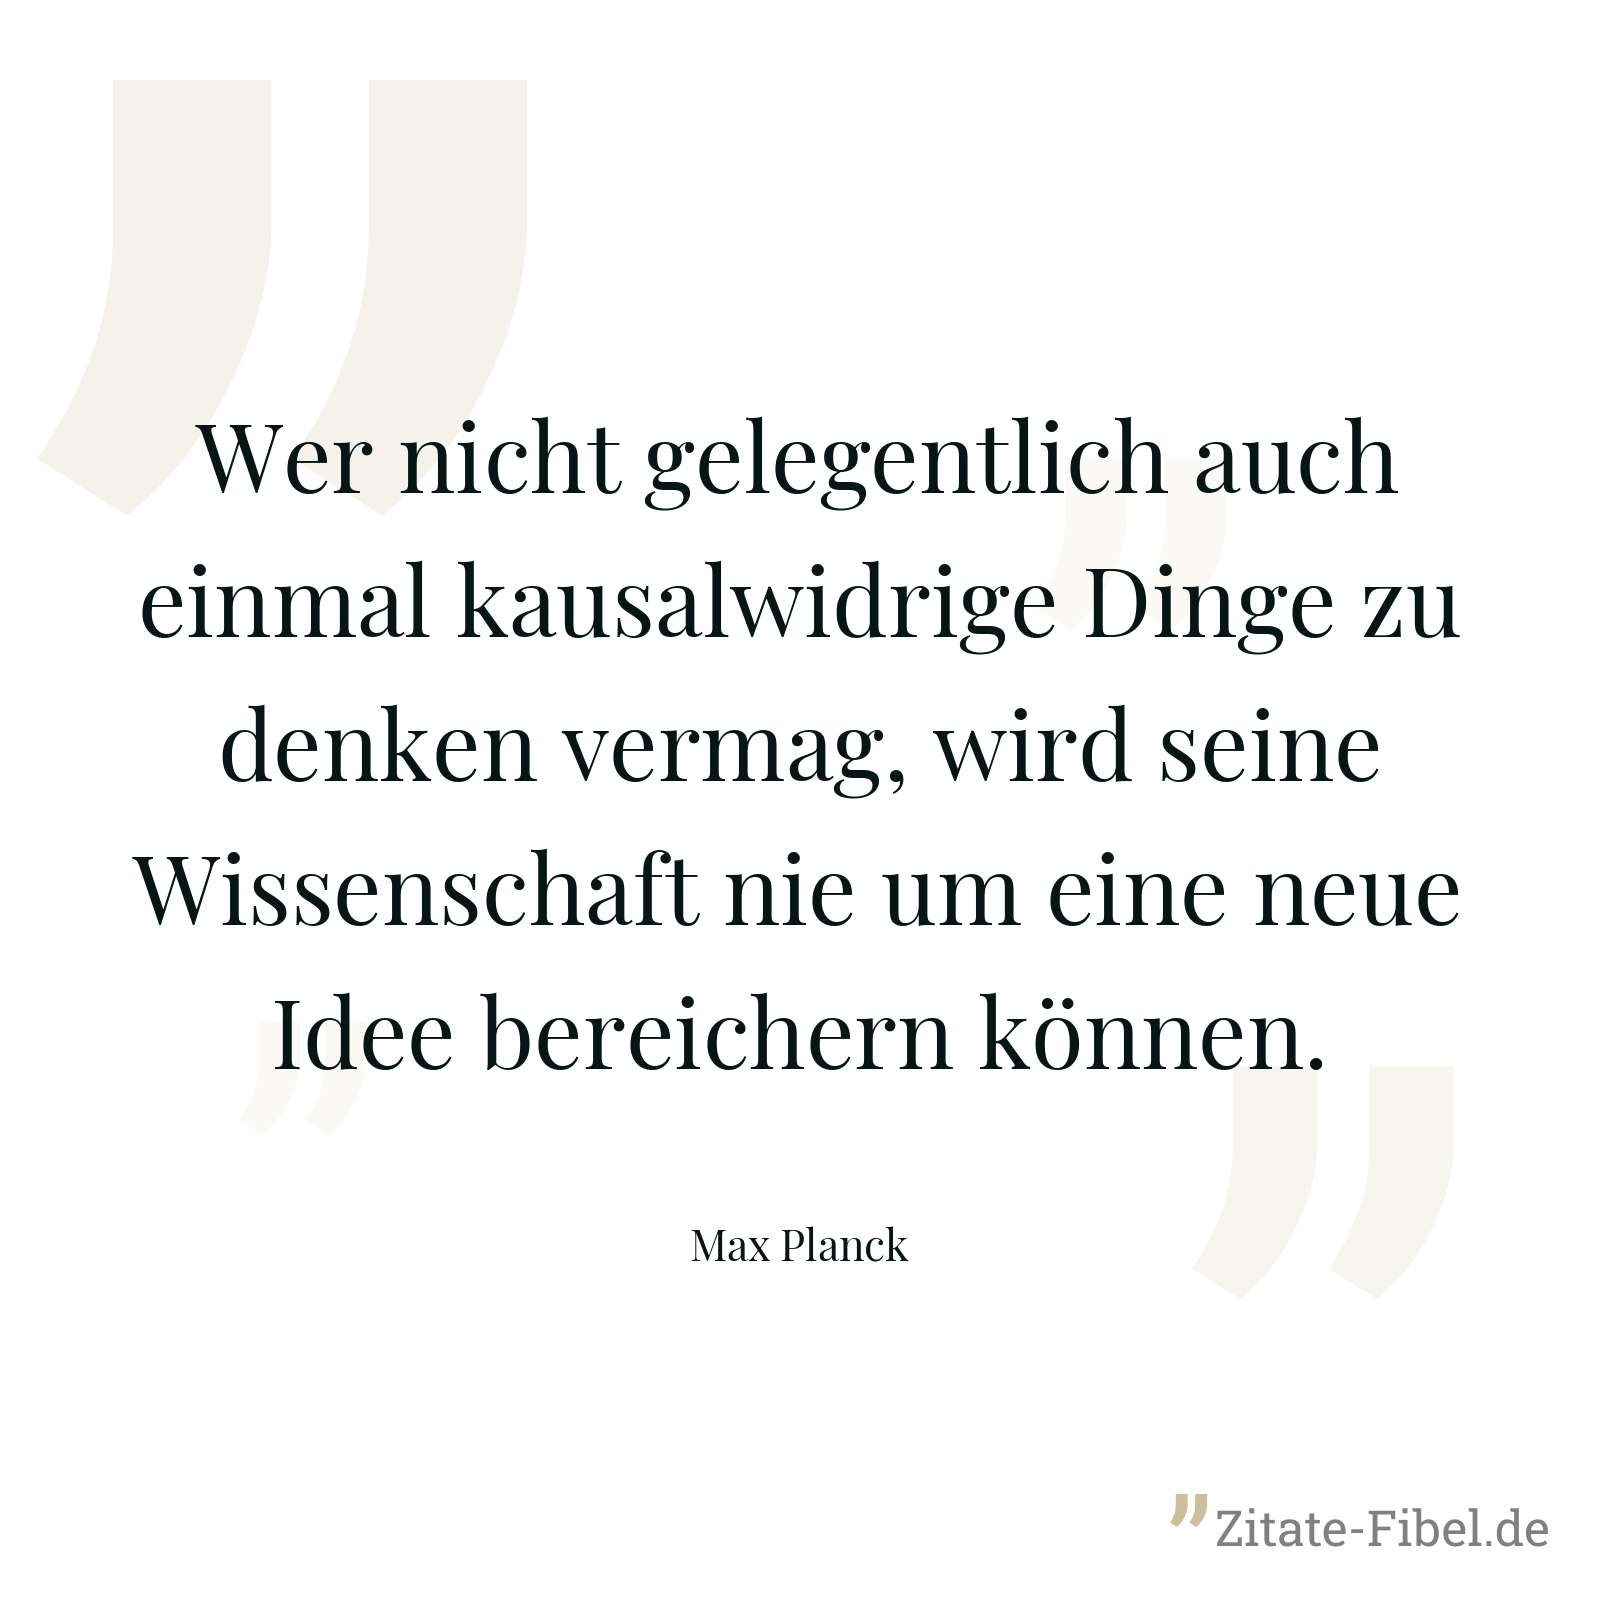 Wer nicht gelegentlich auch einmal kausalwidrige Dinge zu denken vermag, wird seine Wissenschaft nie um eine neue Idee bereichern können. - Max Planck